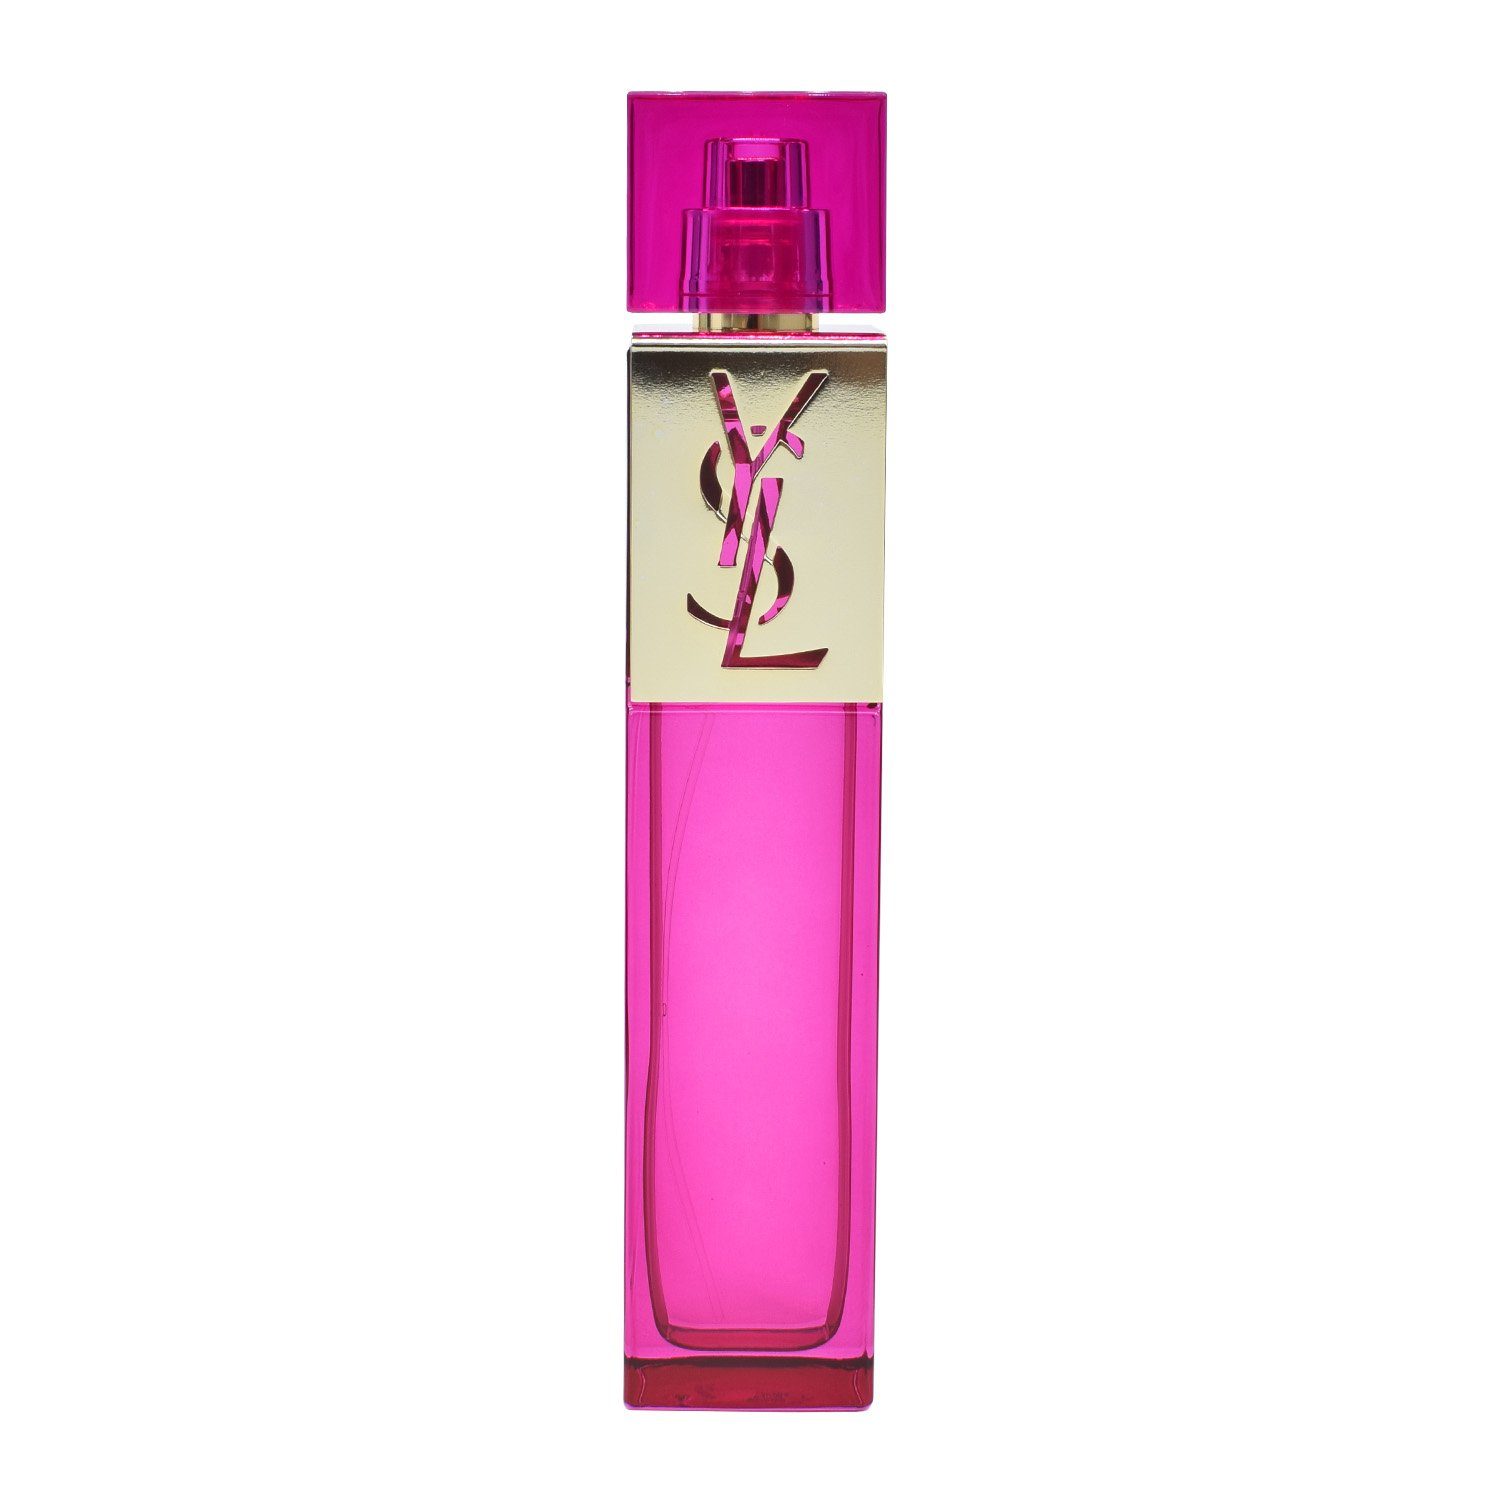 YVES SAINT LAURENT de Parfum 90 ml Eau "Elle"